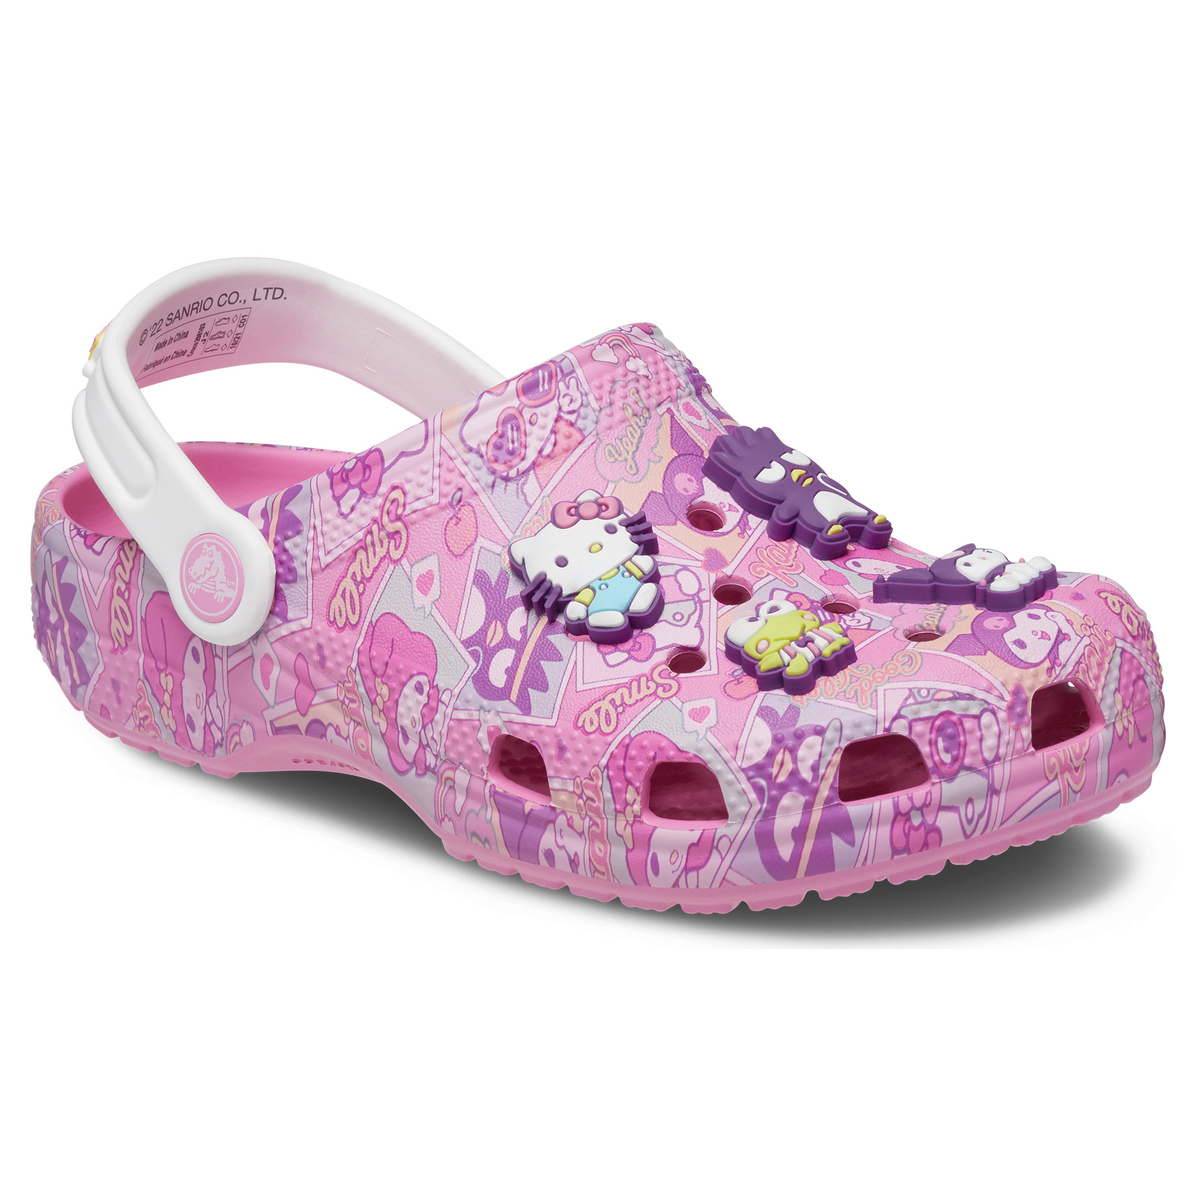 Crocs Clogs, Sandals, Shoes